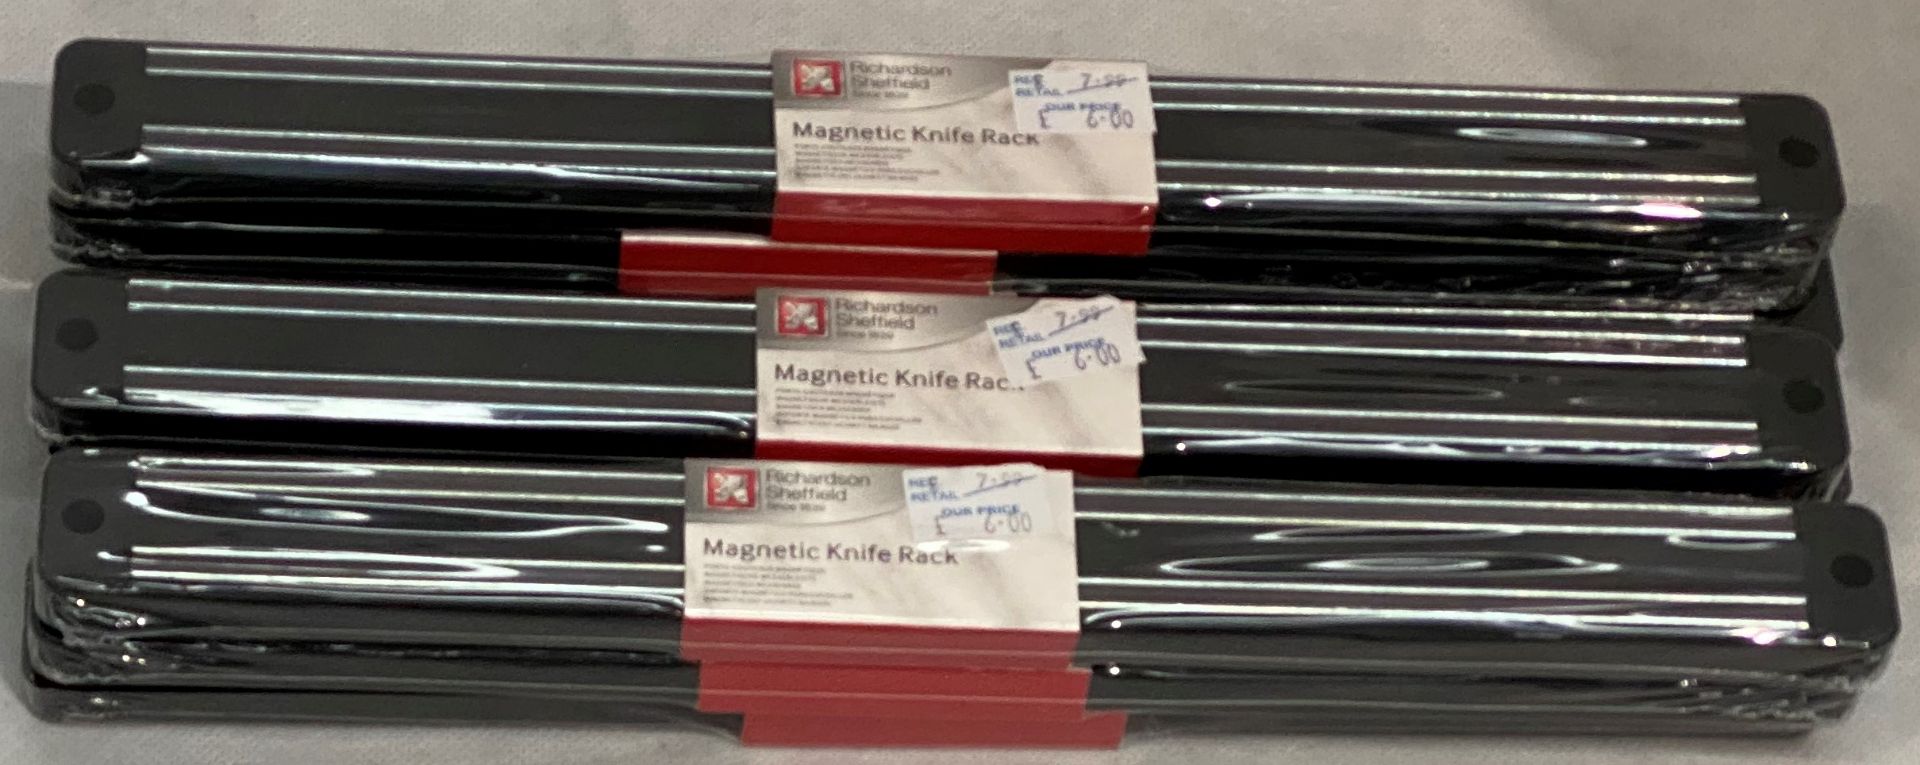 10 x Richardson Sheffield magnetic knife